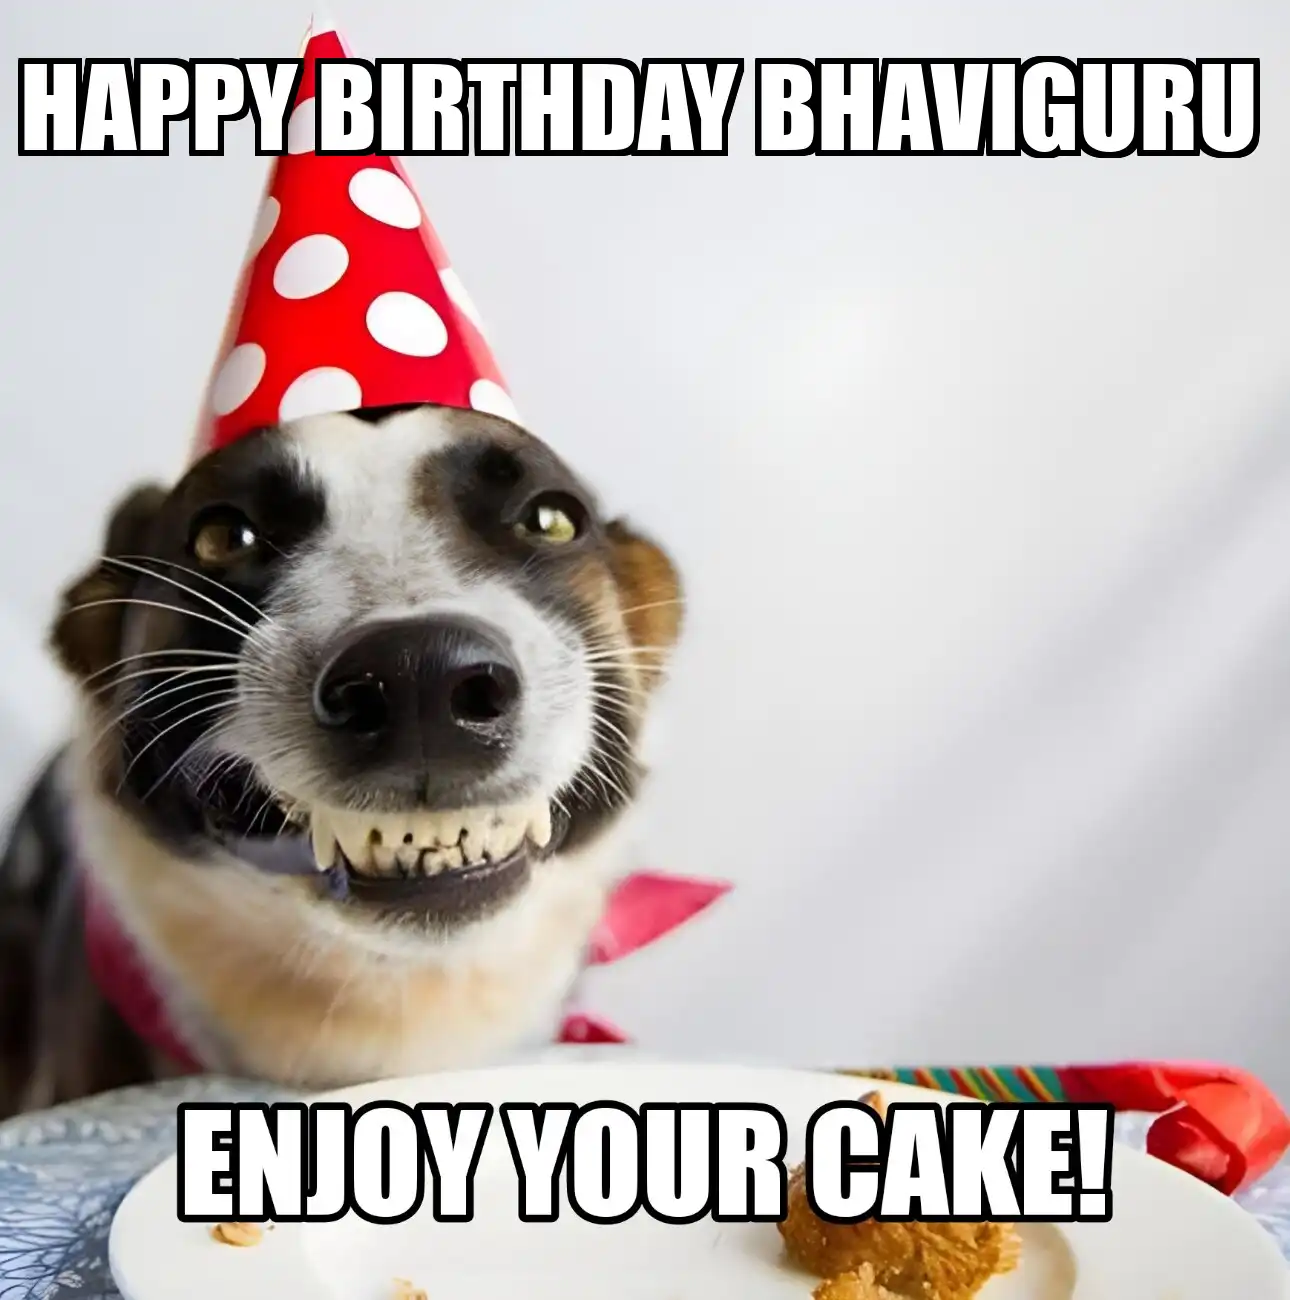 Happy Birthday Bhaviguru Enjoy Your Cake Dog Meme